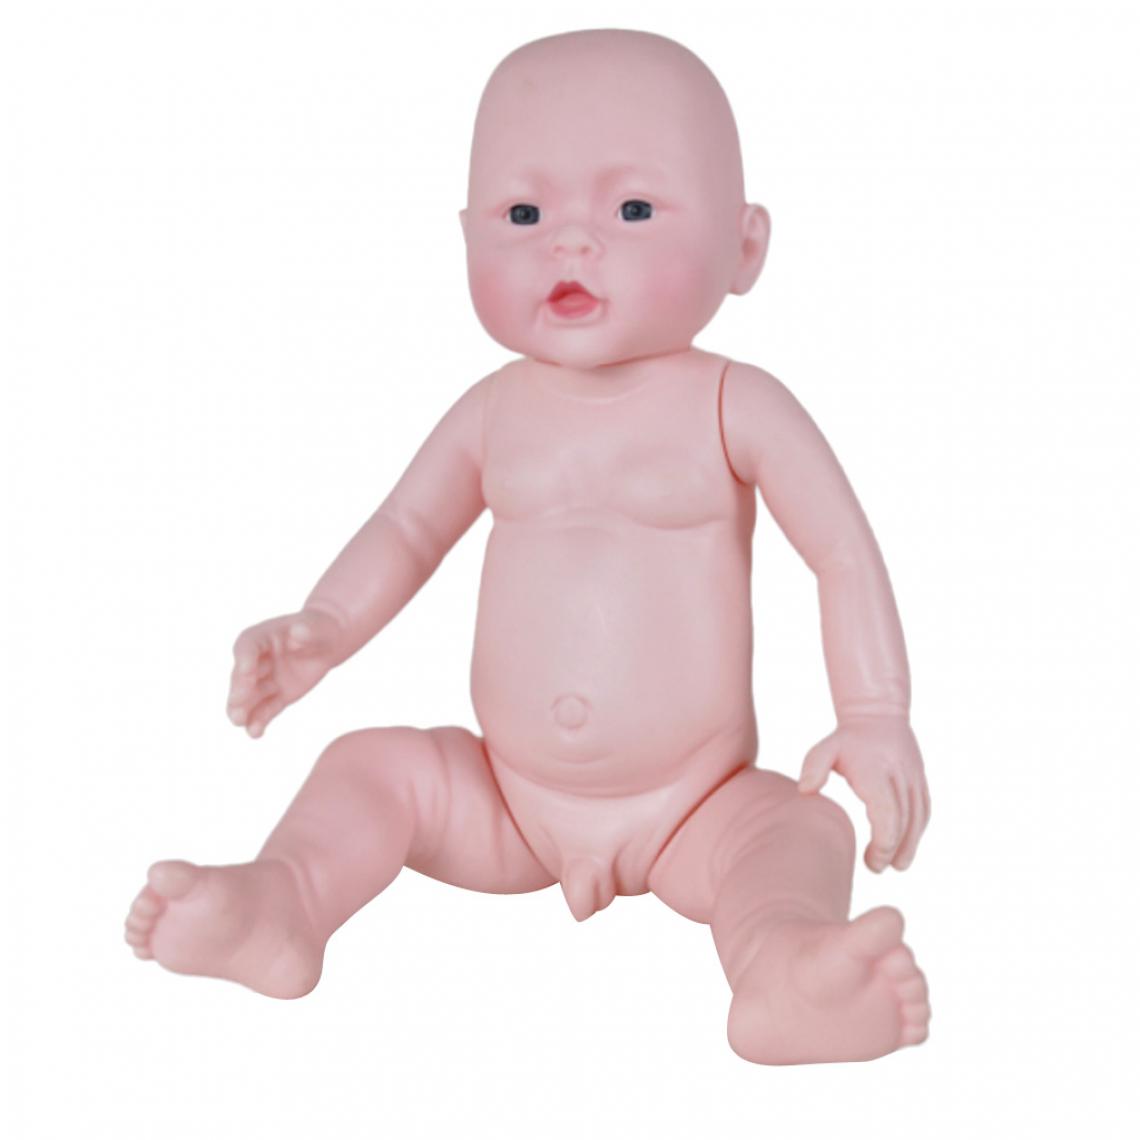 marque generique - Modèle réaliste de poupée pour bébé en PVC réaliste pour fille de 49 cm - Autre appareil de mesure